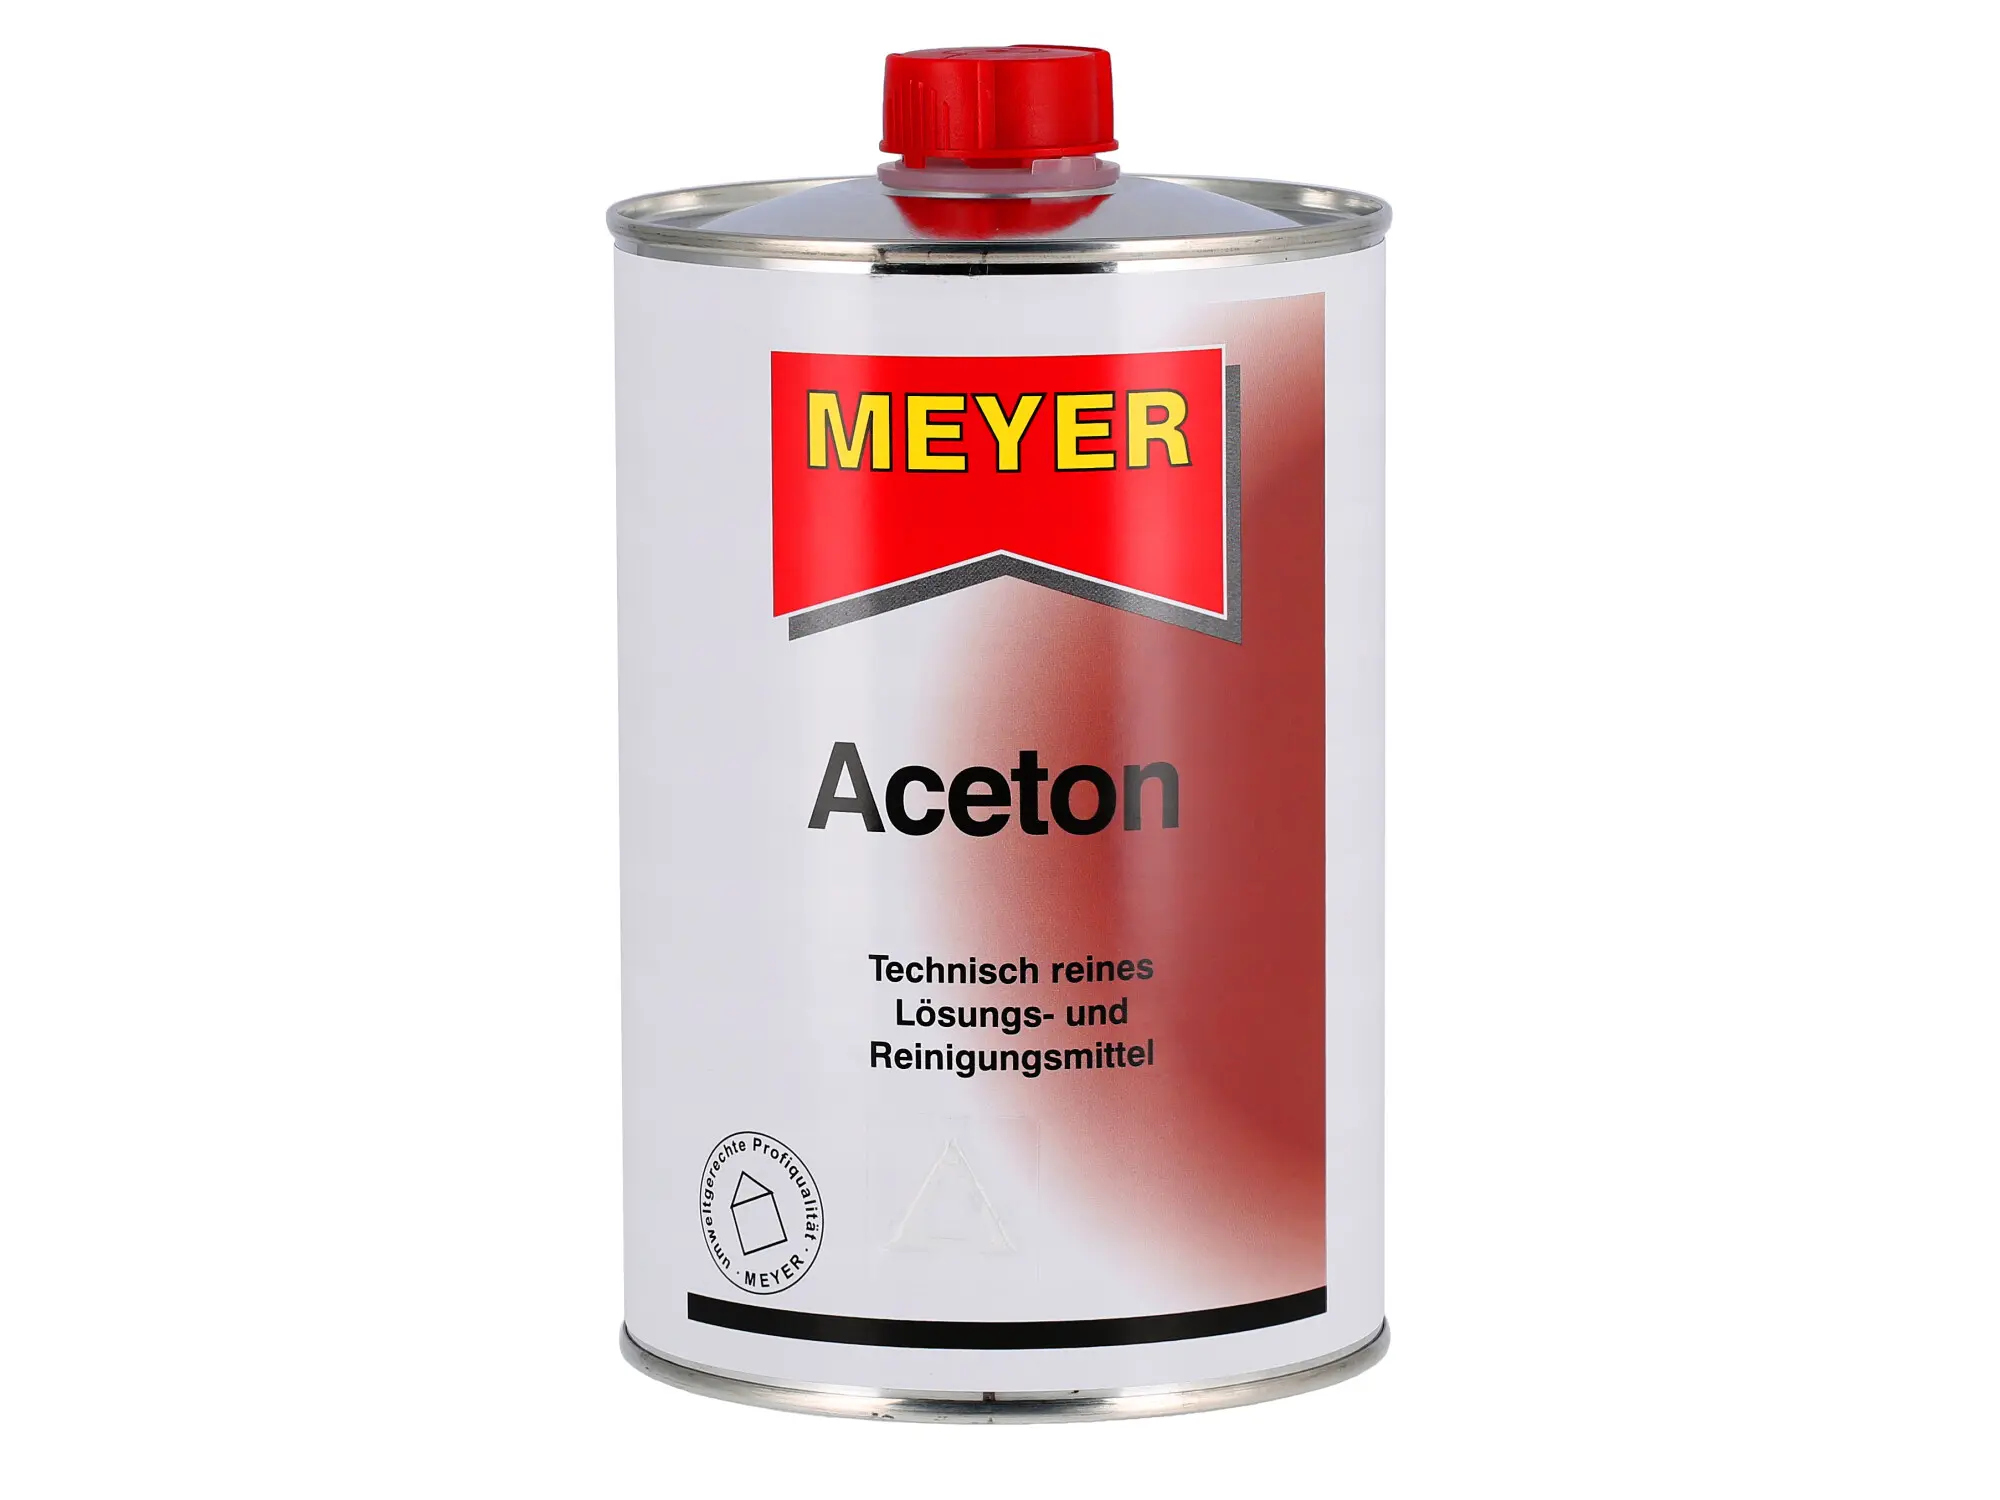 Aceton, Lösungs- und Reinigungsmittel - 1 Liter, Item no: 10075724 - Image 1